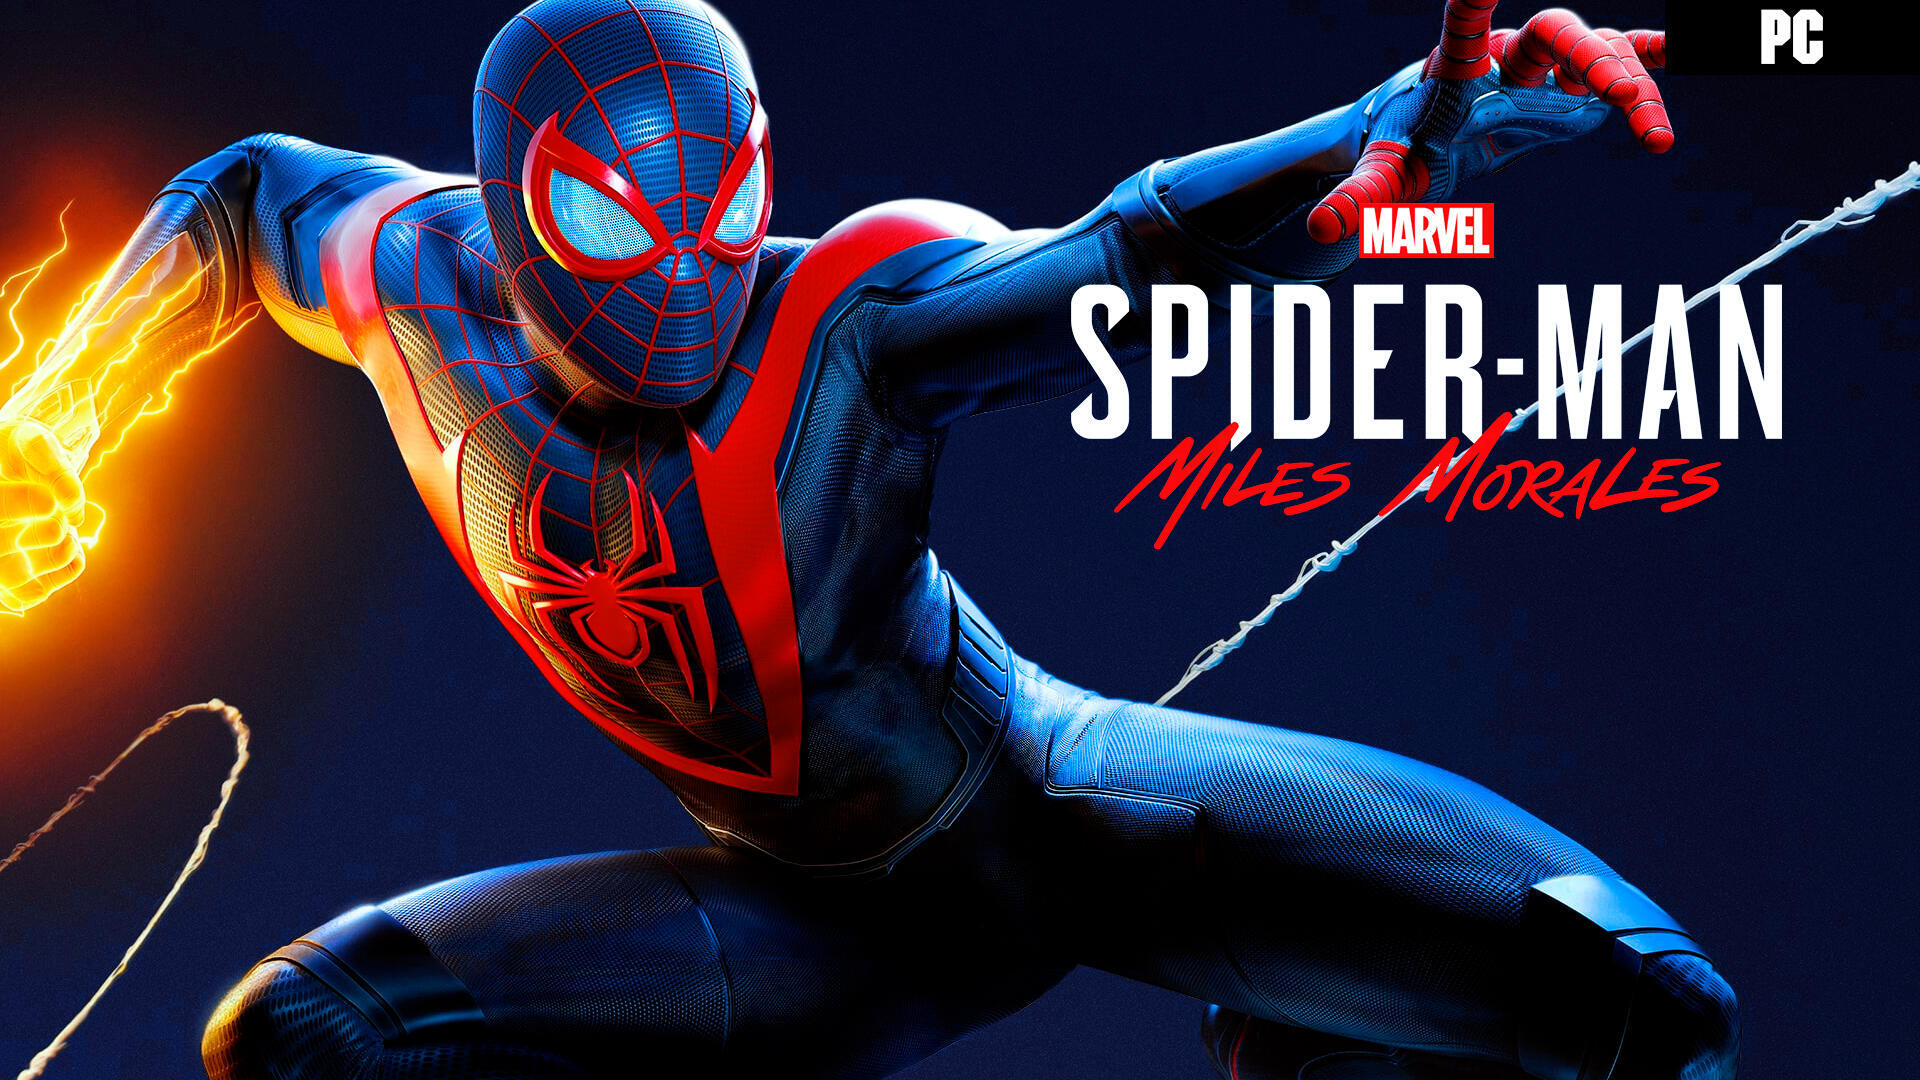 Análisis Spider-Man: Miles Morales, los jóvenes se adaptan mejor a las  nuevas tecnologías